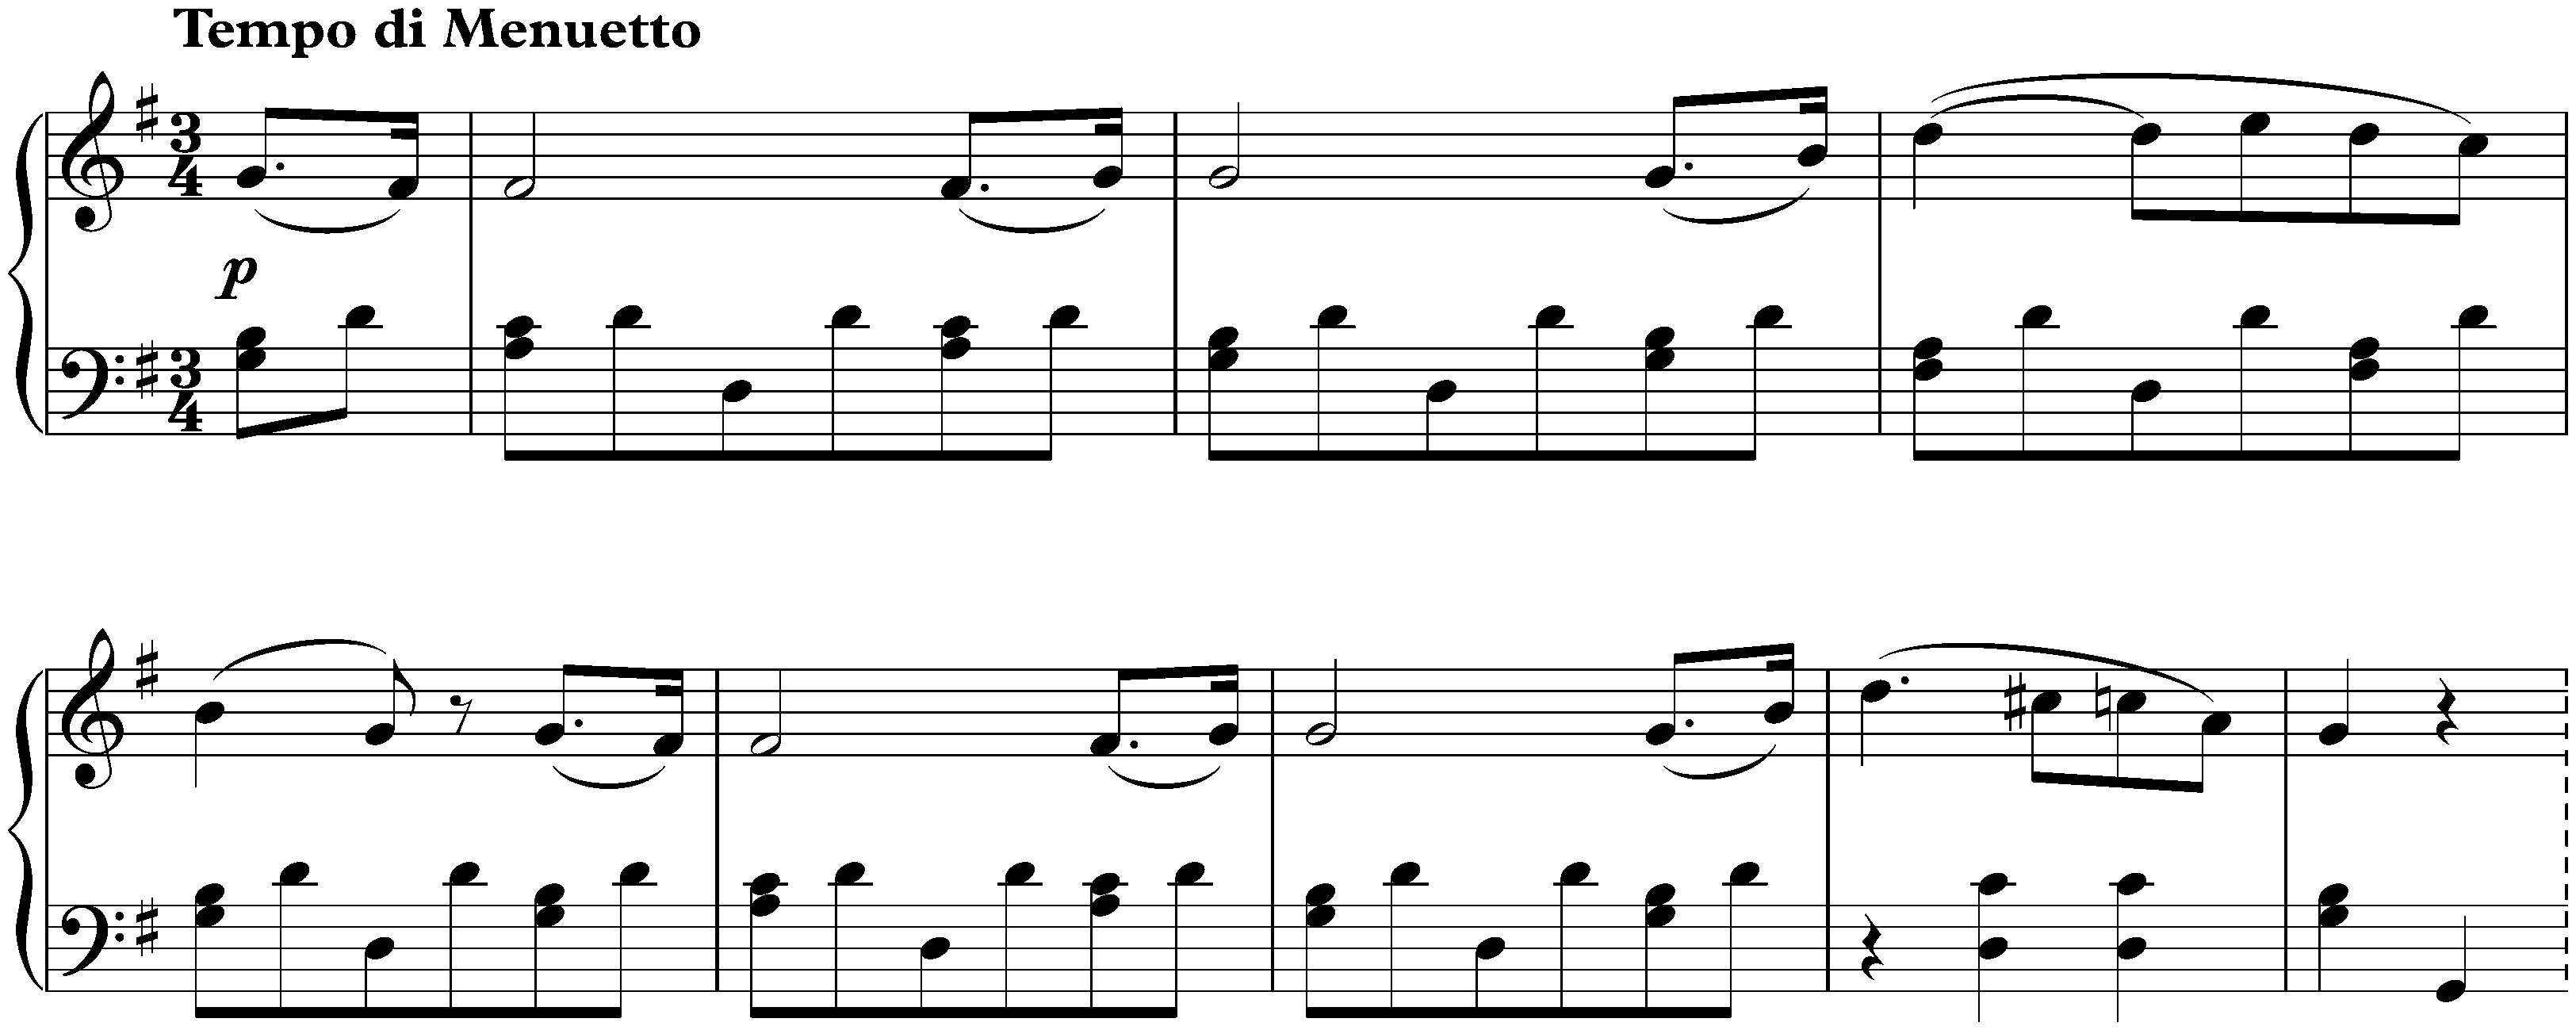 Sonata no. 20 in G major, op. 49 no. 2; 2. Tempo di Menuetto